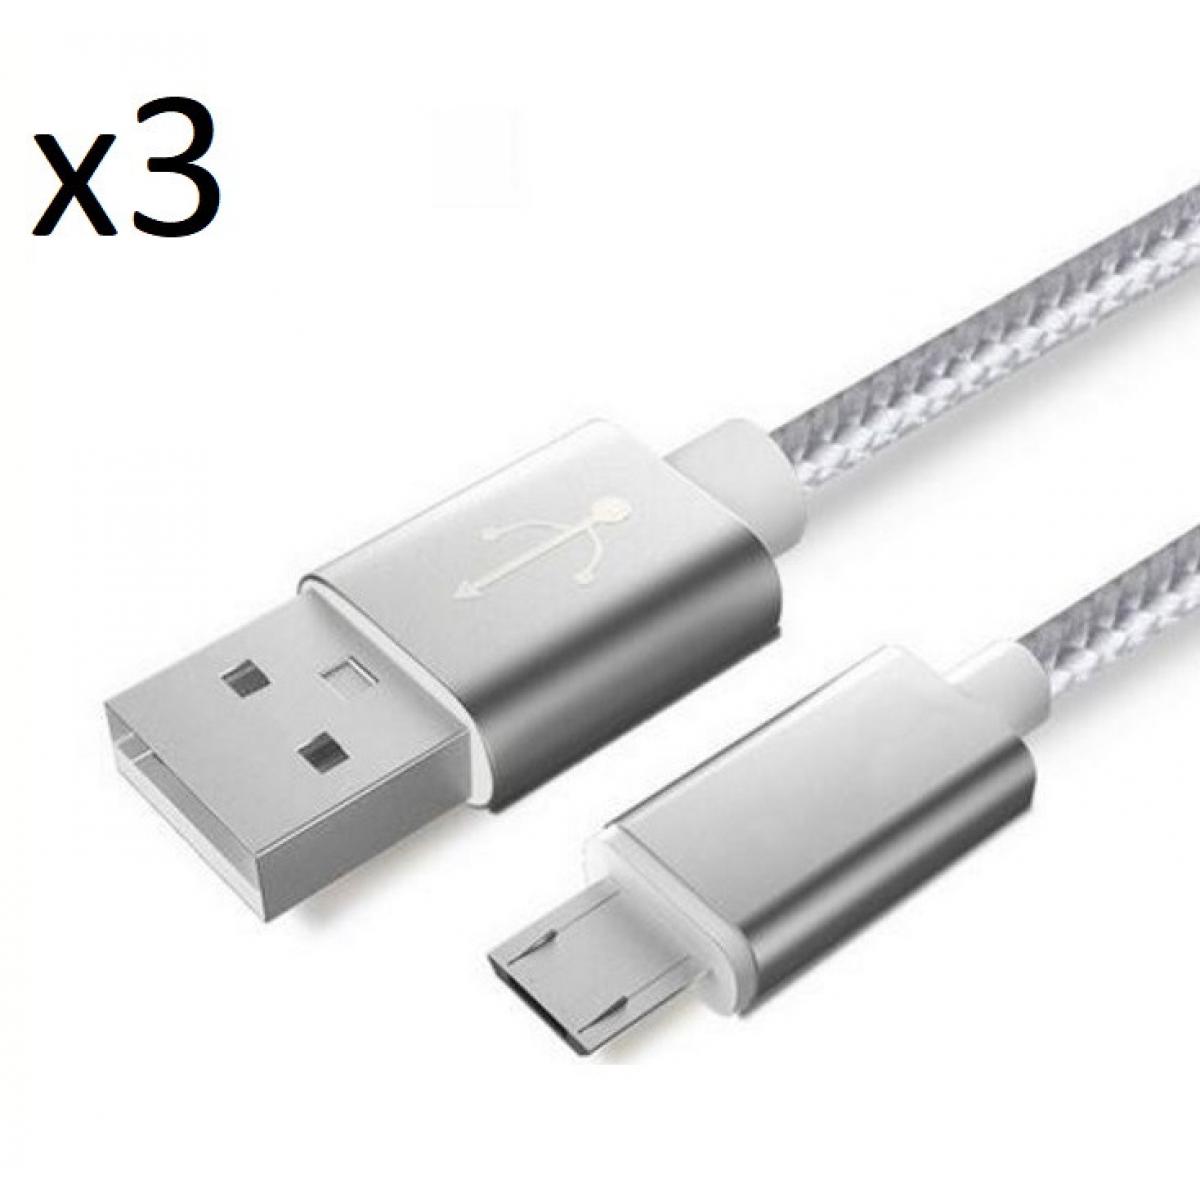 Shot - Pack de 3 Cables Metal Nylon Micro USB pour GIONEE F9 PLUS Smartphone Android Chargeur (ARGENT) - Chargeur secteur téléphone